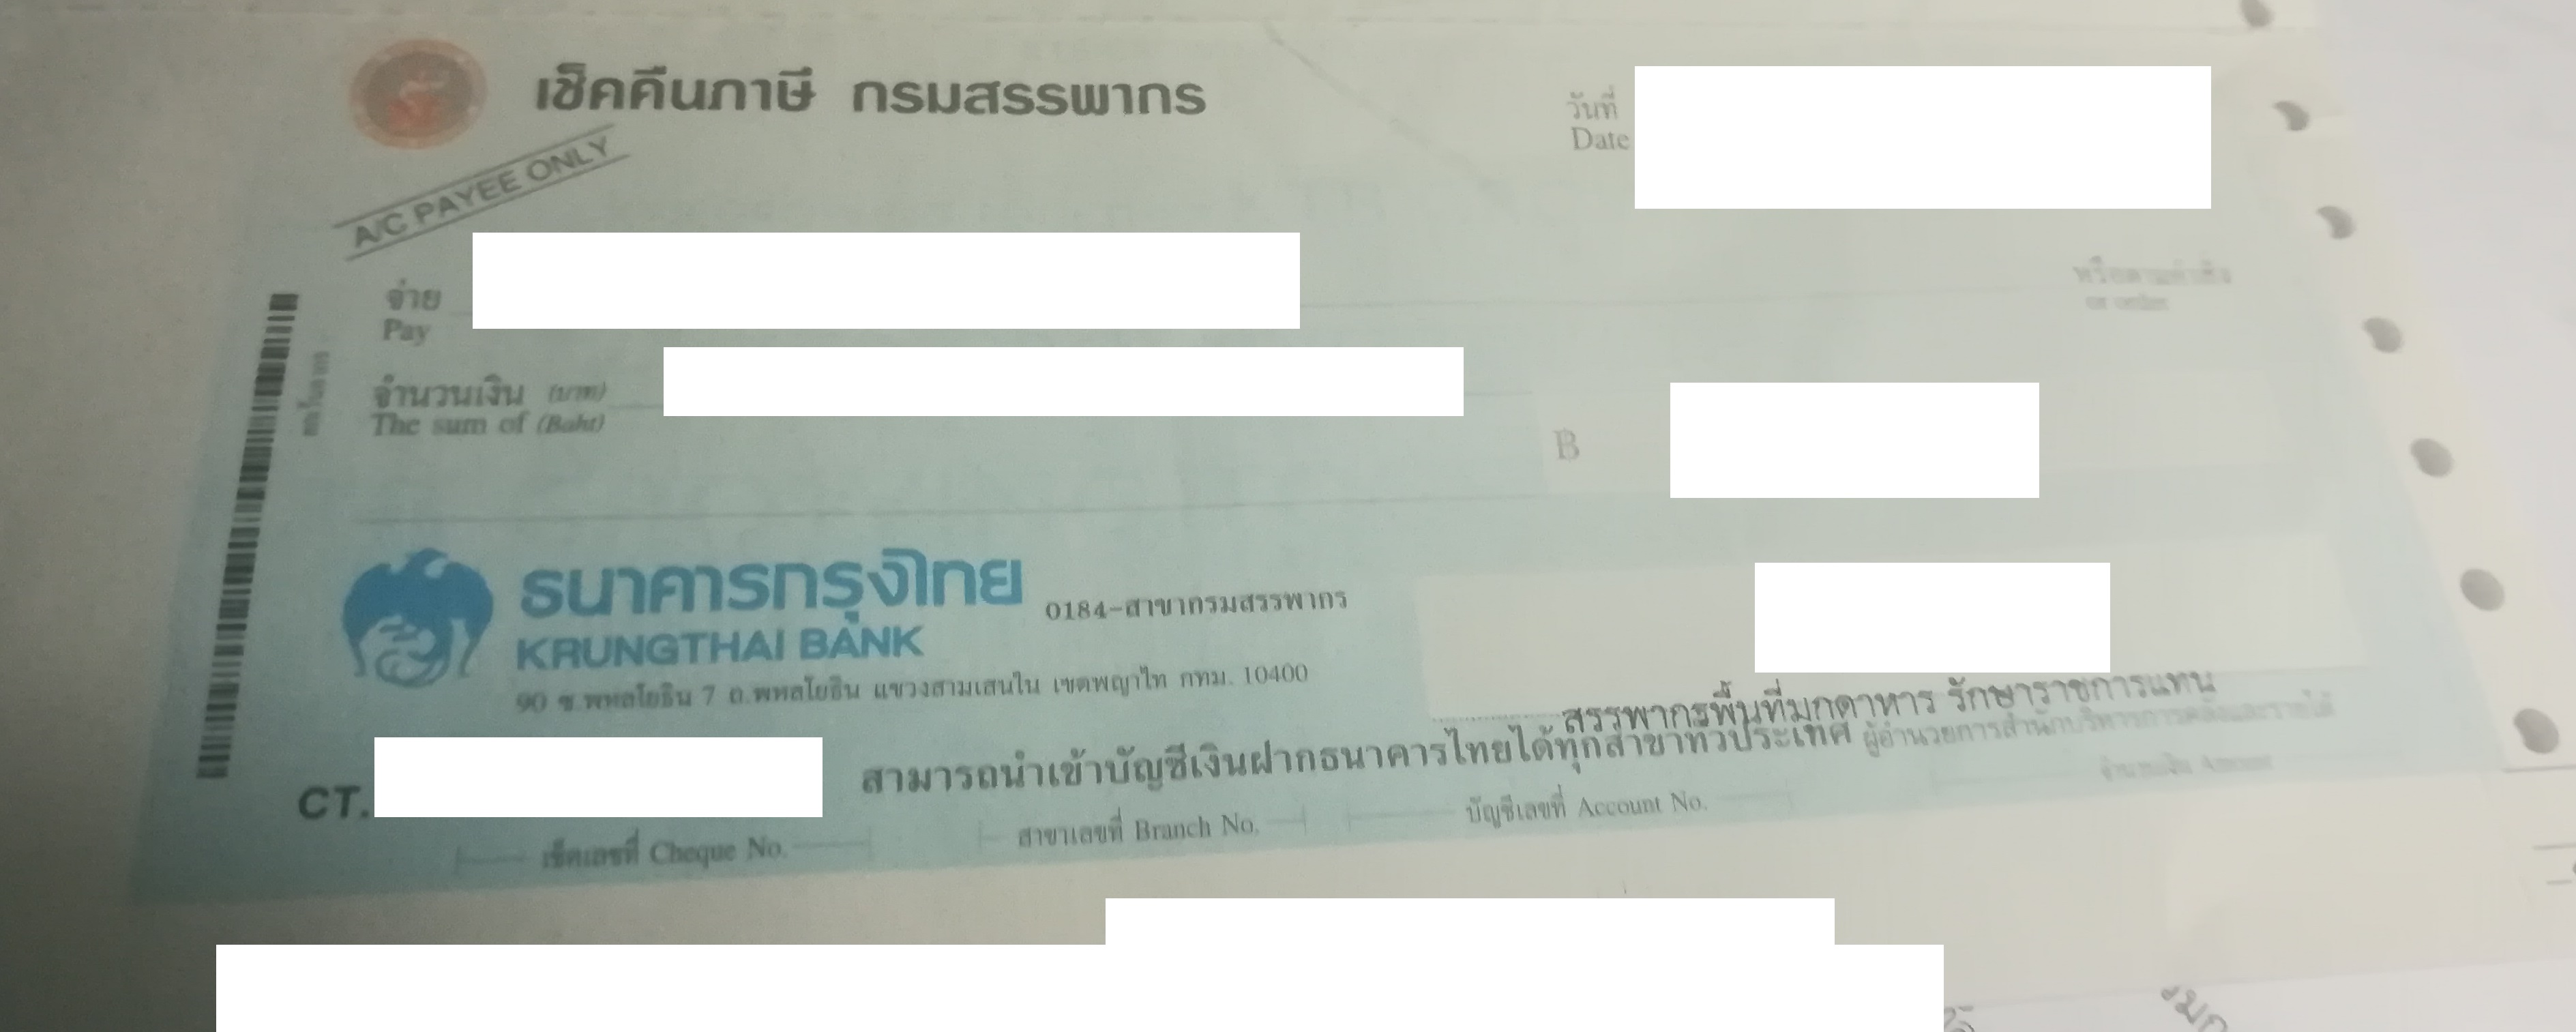 เช็คคืนภาษีสรรพากร เป็นของธนาคารกรุงไทย เวลาจะขึ้นเช็ค ต้องเปิดบัญชีกรุงไทยไหมครับ?  - Pantip